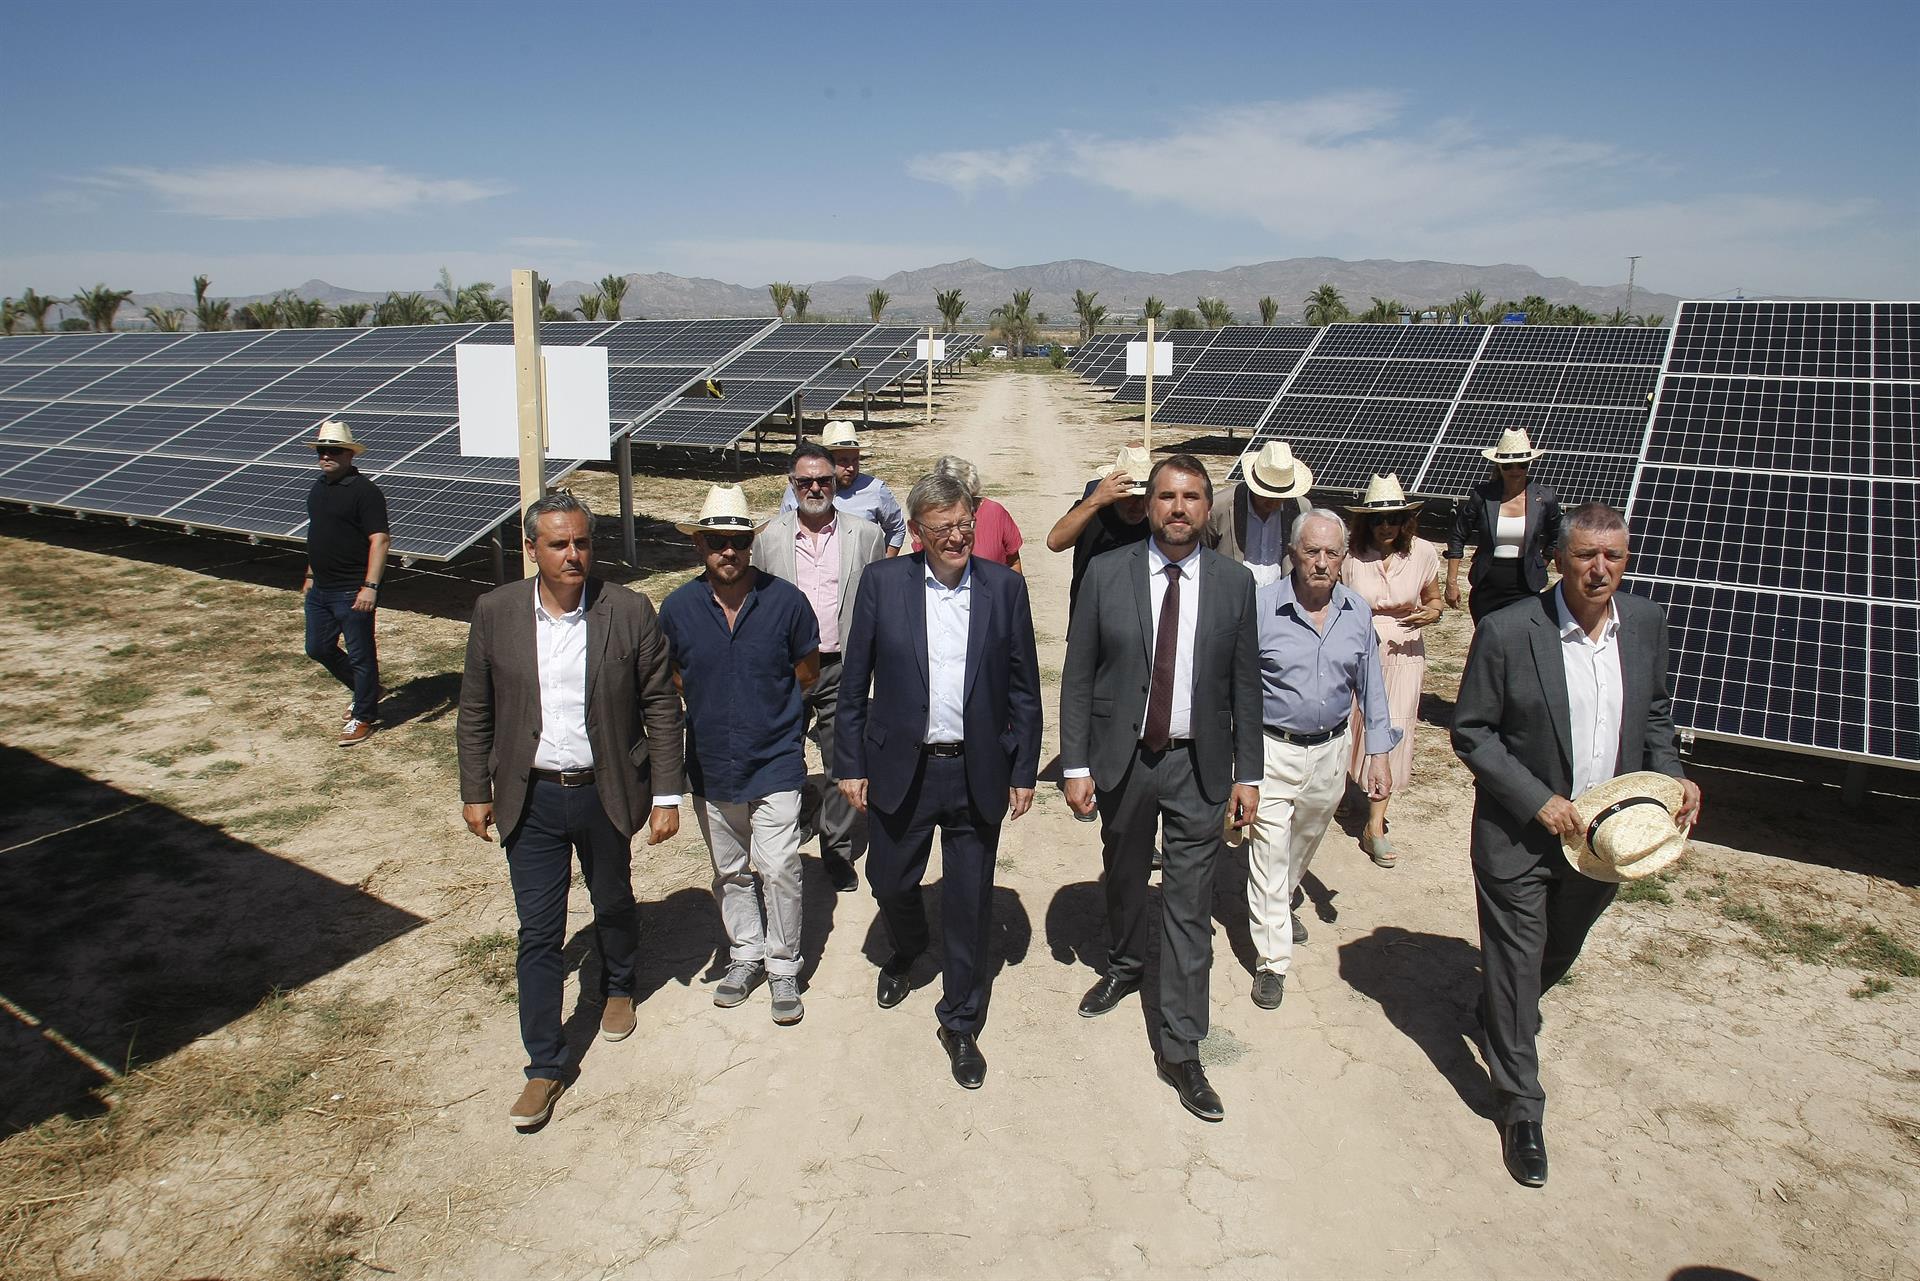 El president de la Generalitat, Ximo Puig, asiste junto al conseller de Economía Sostenible, Sectores Productivos, Comercio y Trabajo, Rafa Climent, a la puesta en marcha de la planta fotovoltaica de Catral. EFE/ Morell